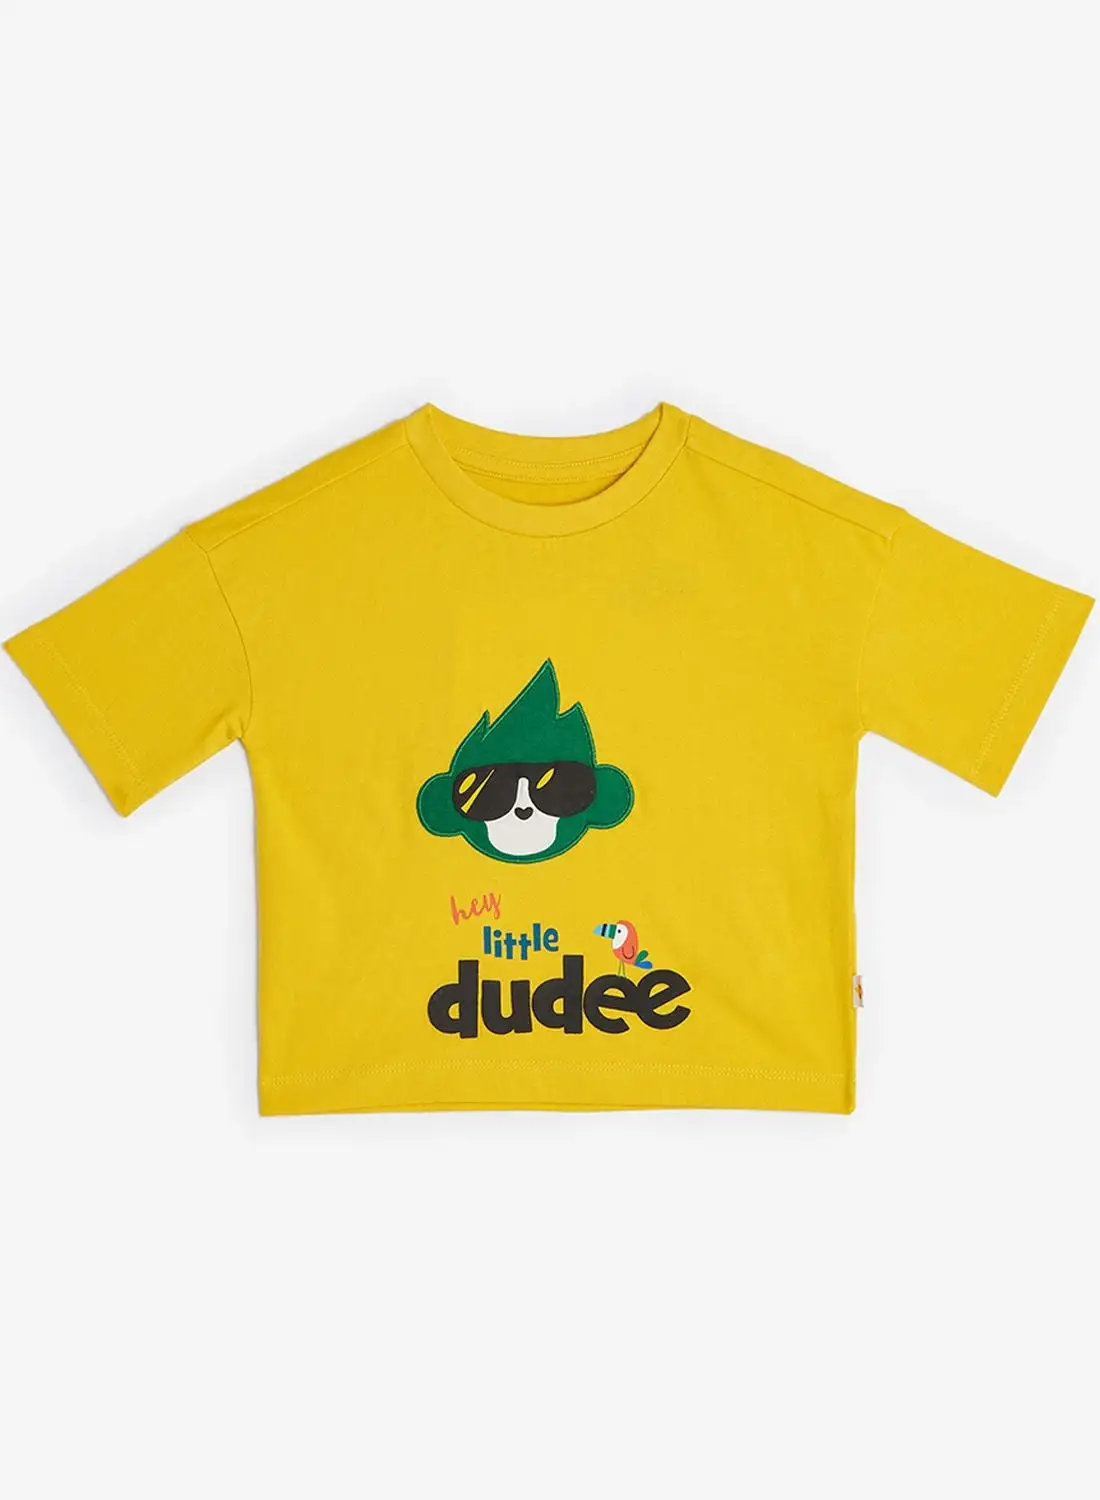 Cheekee Munkee Kids Graphic T-Shirt